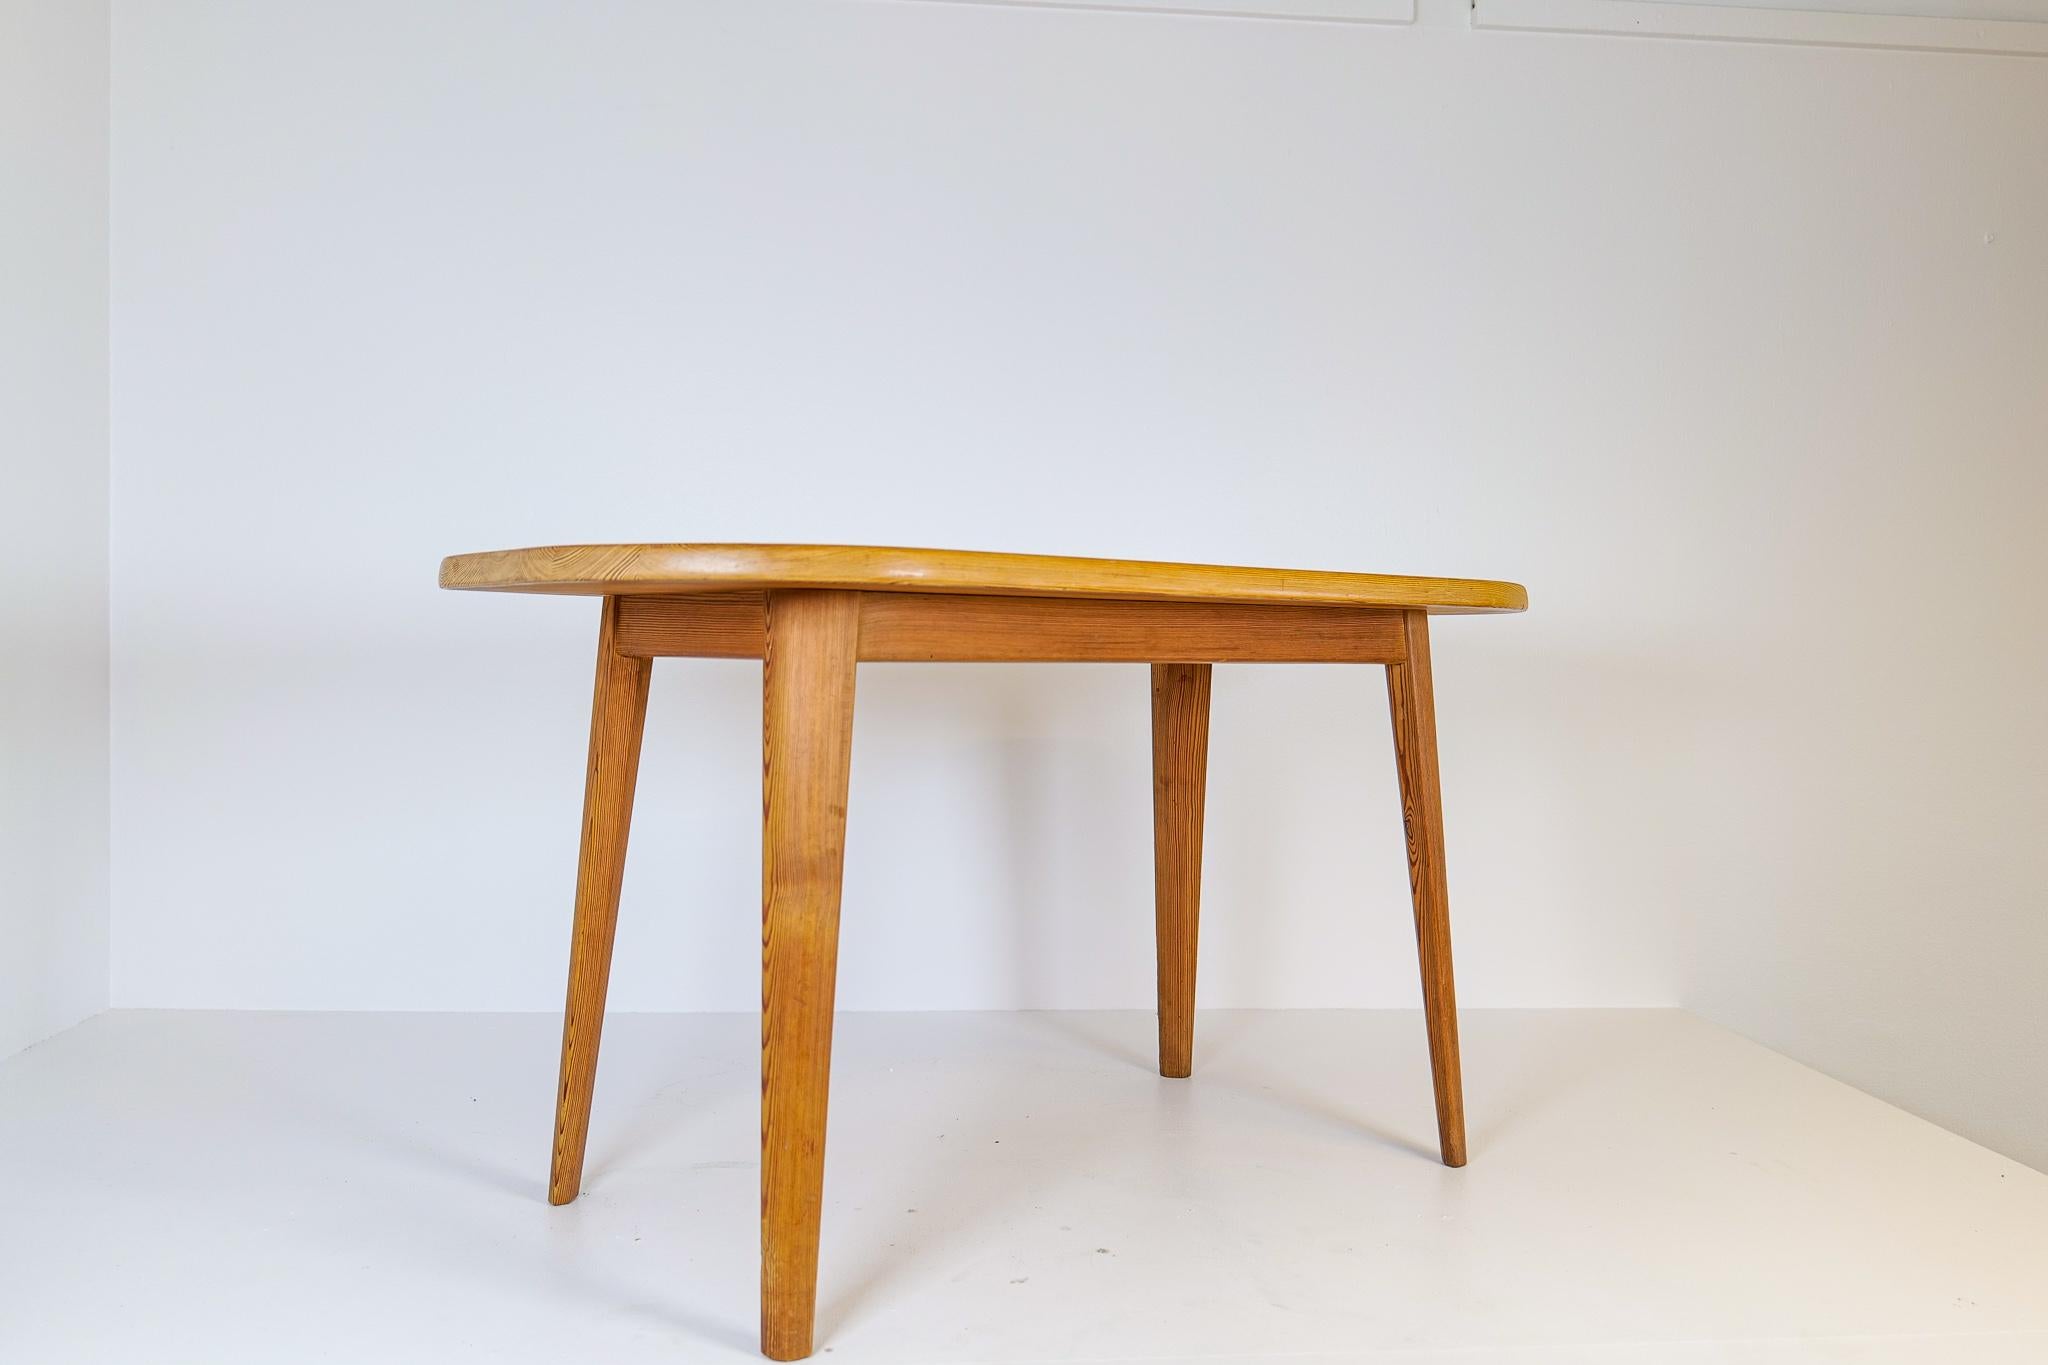 Wunderschöner Kiefer-Kassettentisch des schwedischen Designers Carl Malmsten. Der Tisch stammt aus der Zeit, als in Schweden hochwertige Kiefernmöbel hergestellt wurden. Dies ist keine Ausnahme. 

Der Tisch ist in einem guten Vintage-Zustand mit